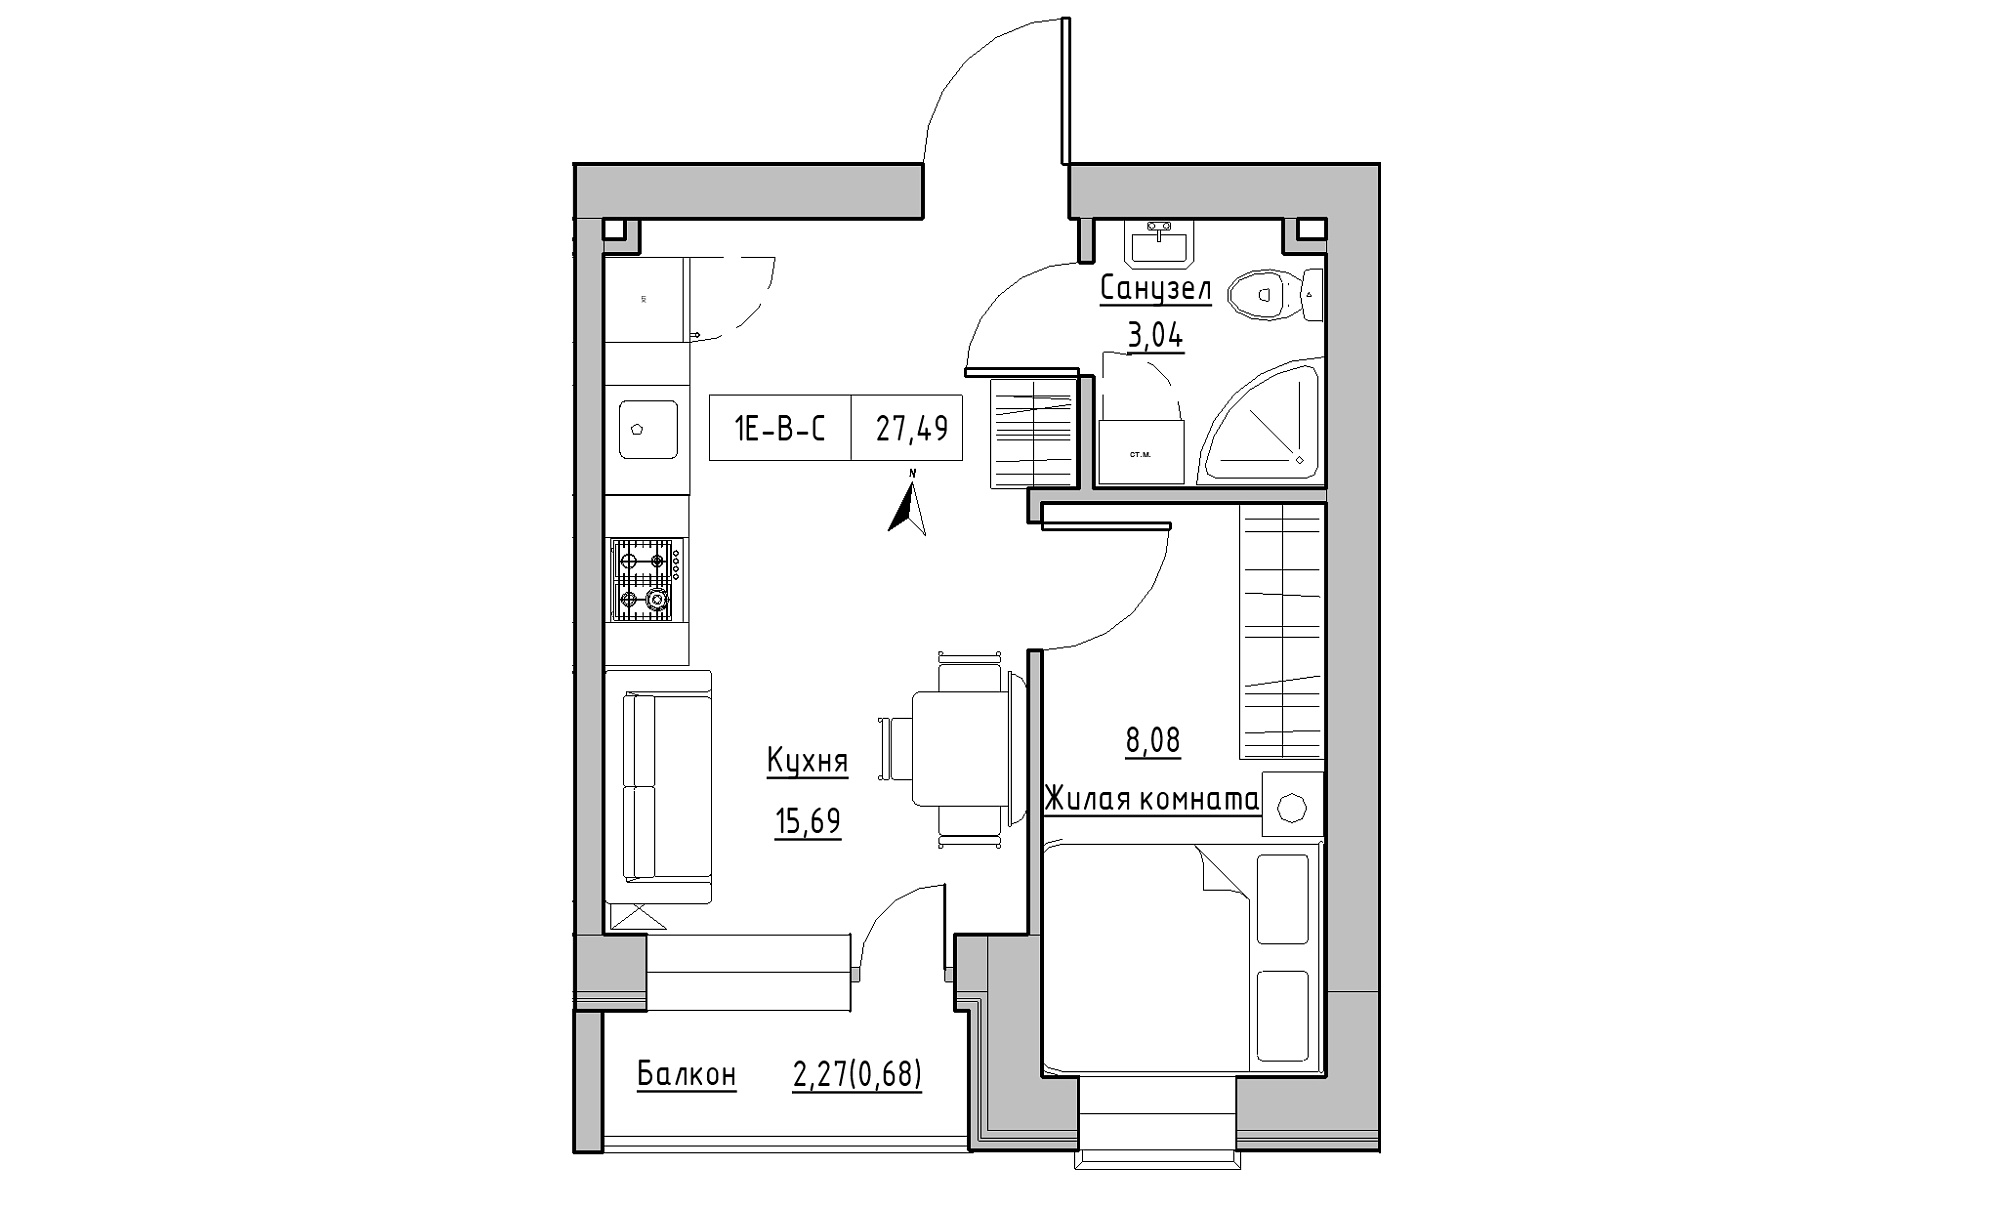 Планировка 1-к квартира площей 27.49м2, KS-016-05/0007.